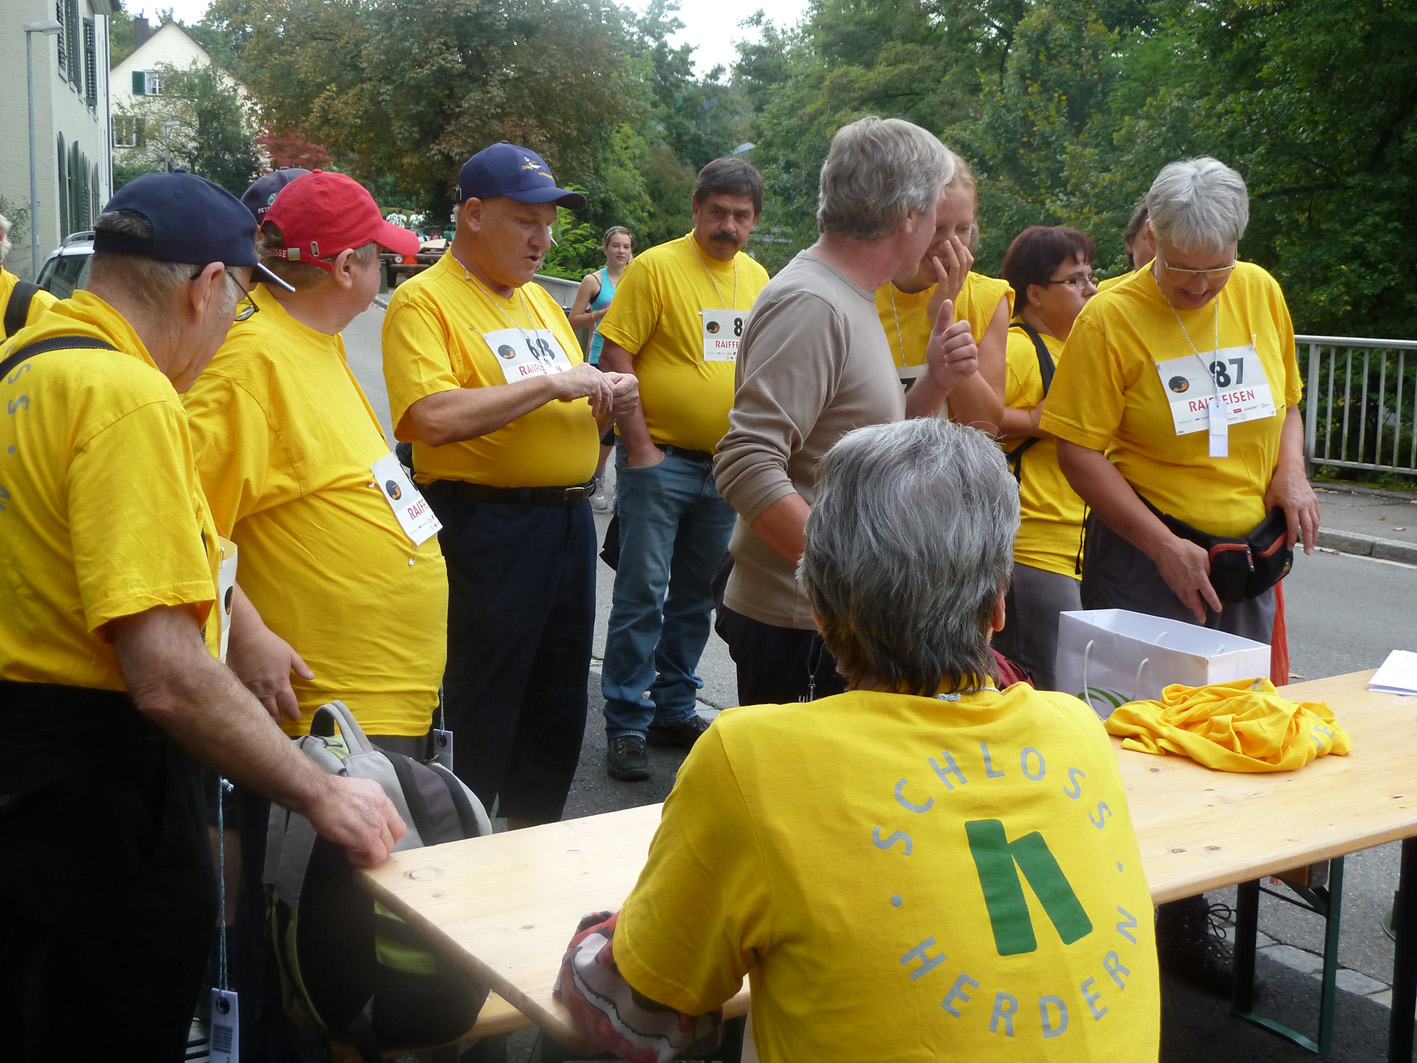 Auf dem Foto sieht man 9 Bewohner und Mitarbeiter vom Schloss Herdern. Sie sind in der Vorbereitung zum 2-Stunden Sponsorenlauf in Frauenfeld.Alle tragen ein gelbes Tshirt mit dem Aufdruck: 